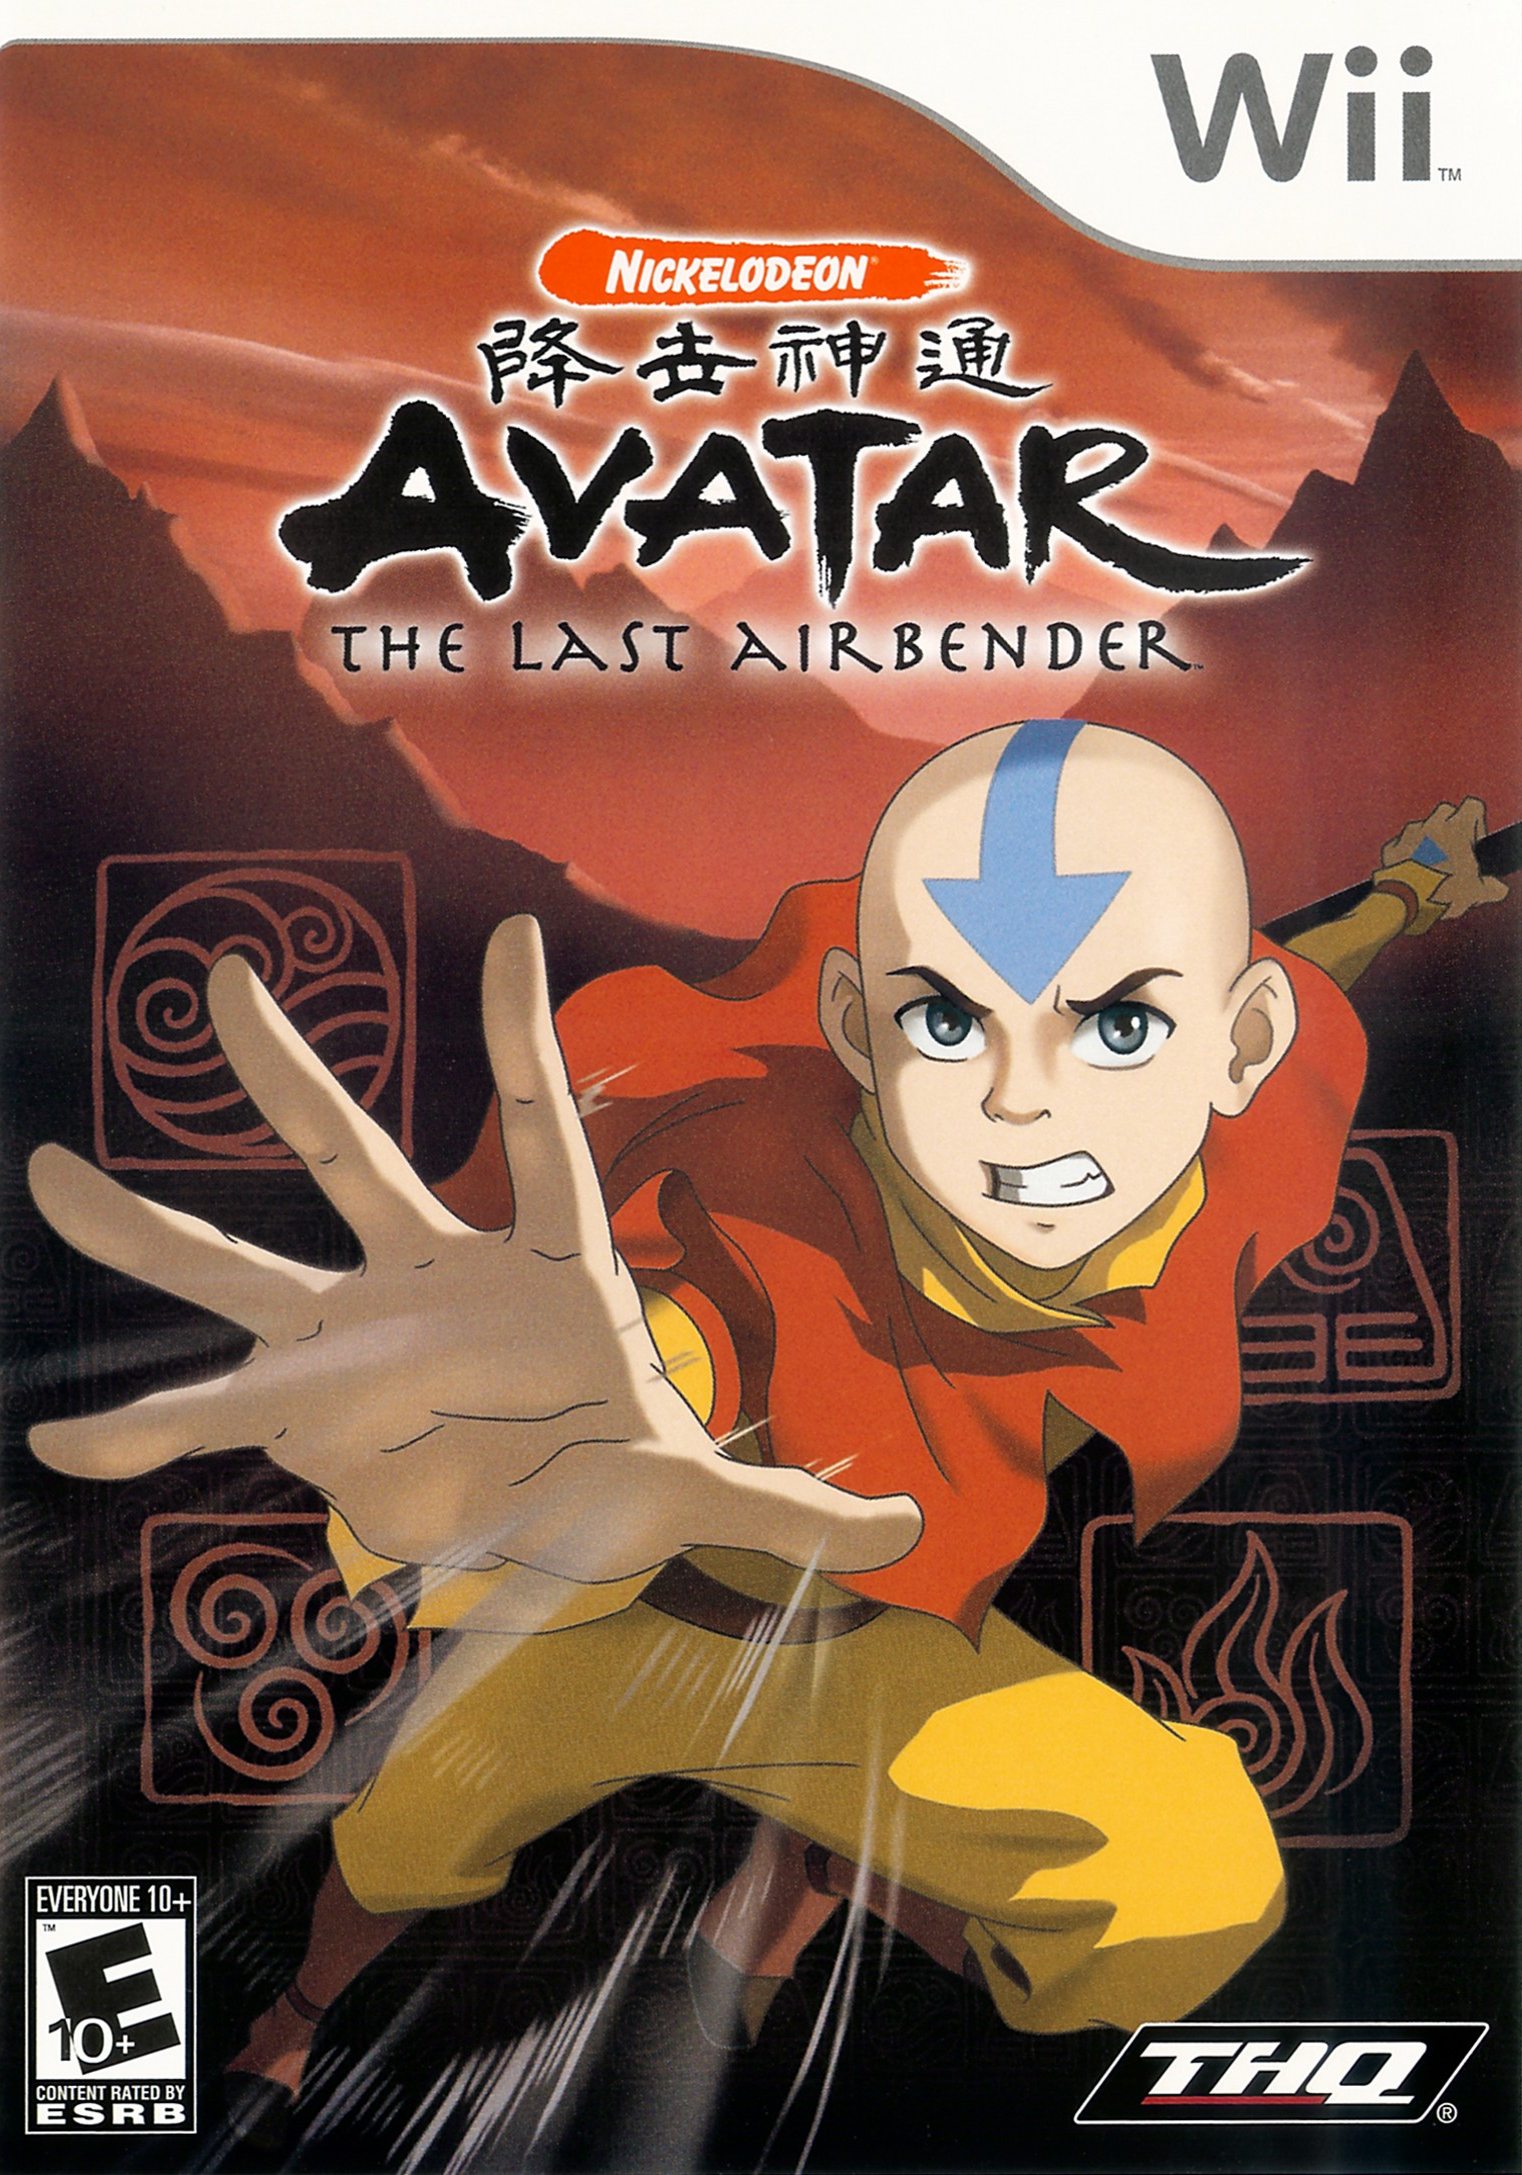 Avatar: The Last Airbender Nintendo thật phấn khích! Nhập vai vào thành viên của nhóm Aang và chiến đấu để đánh bại những kẻ thù xấu xa nhất. Với đồ họa đẹp mắt và hệ thống chiến đấu độc đáo, bạn sẽ không bao giờ muốn rời khỏi màn hình. Xem hình ảnh và chơi game ngay hôm nay!